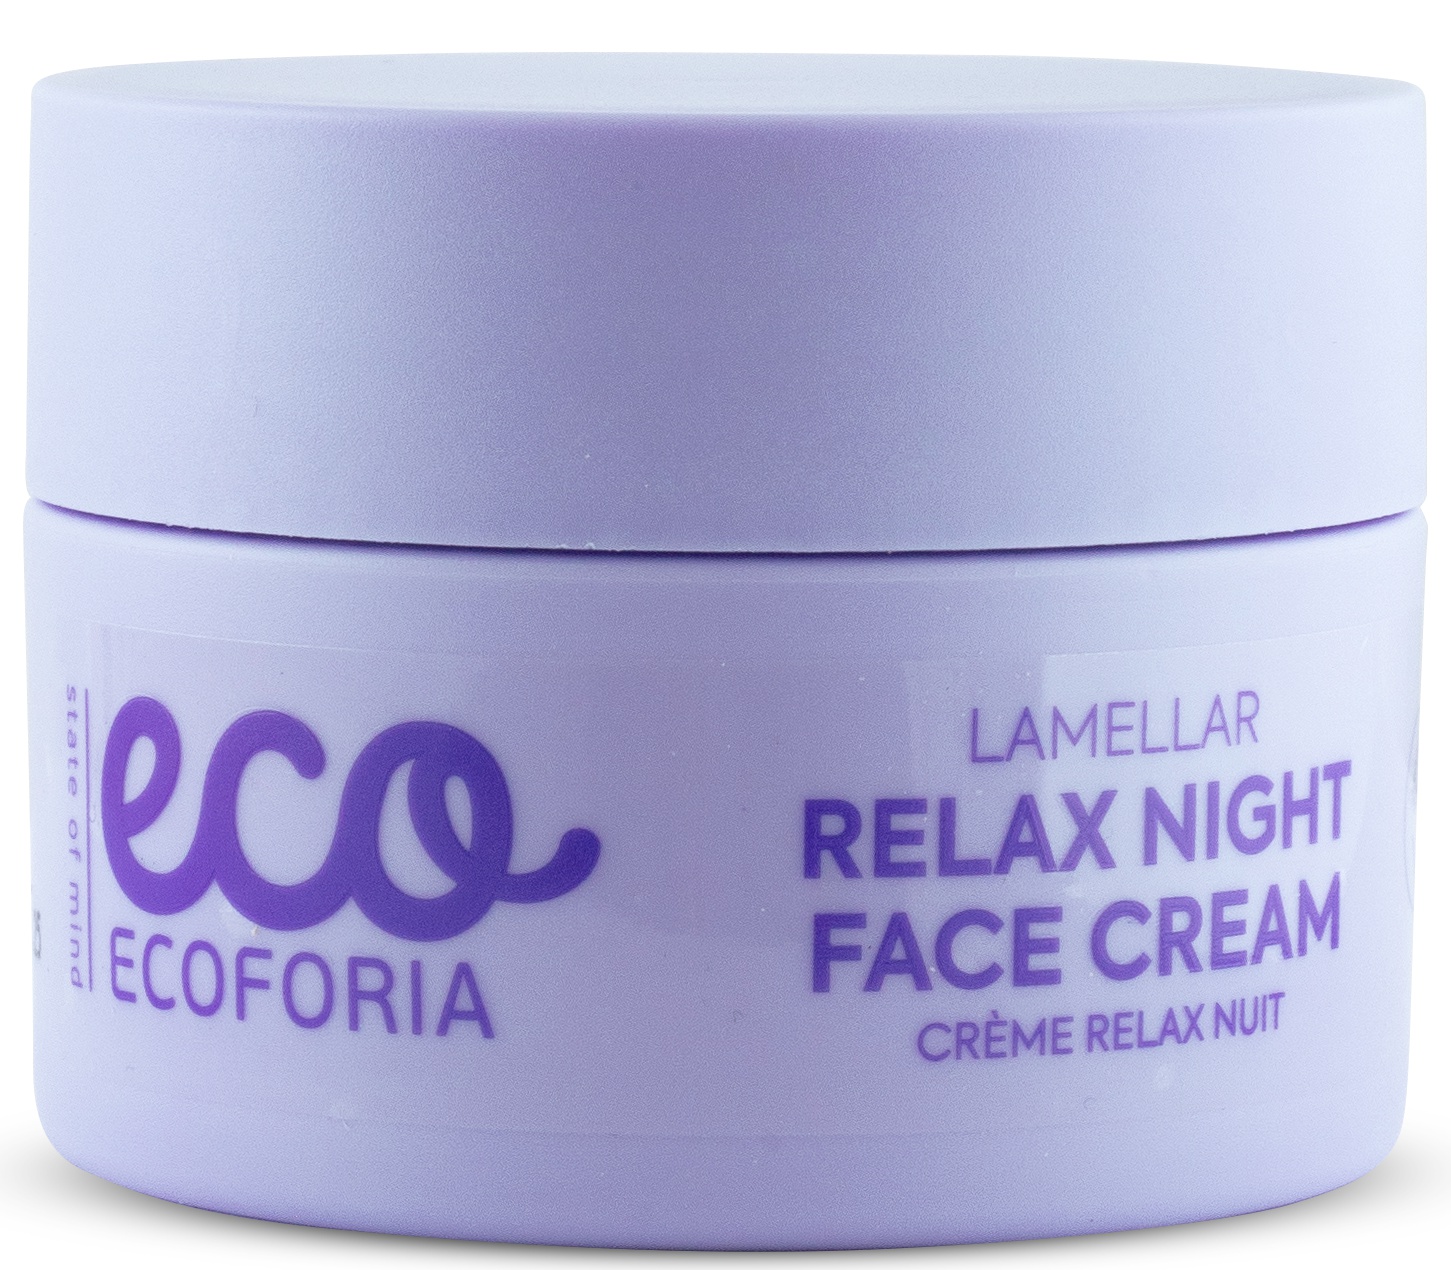 Ecoforia Lamellar Relax Night Face Cream